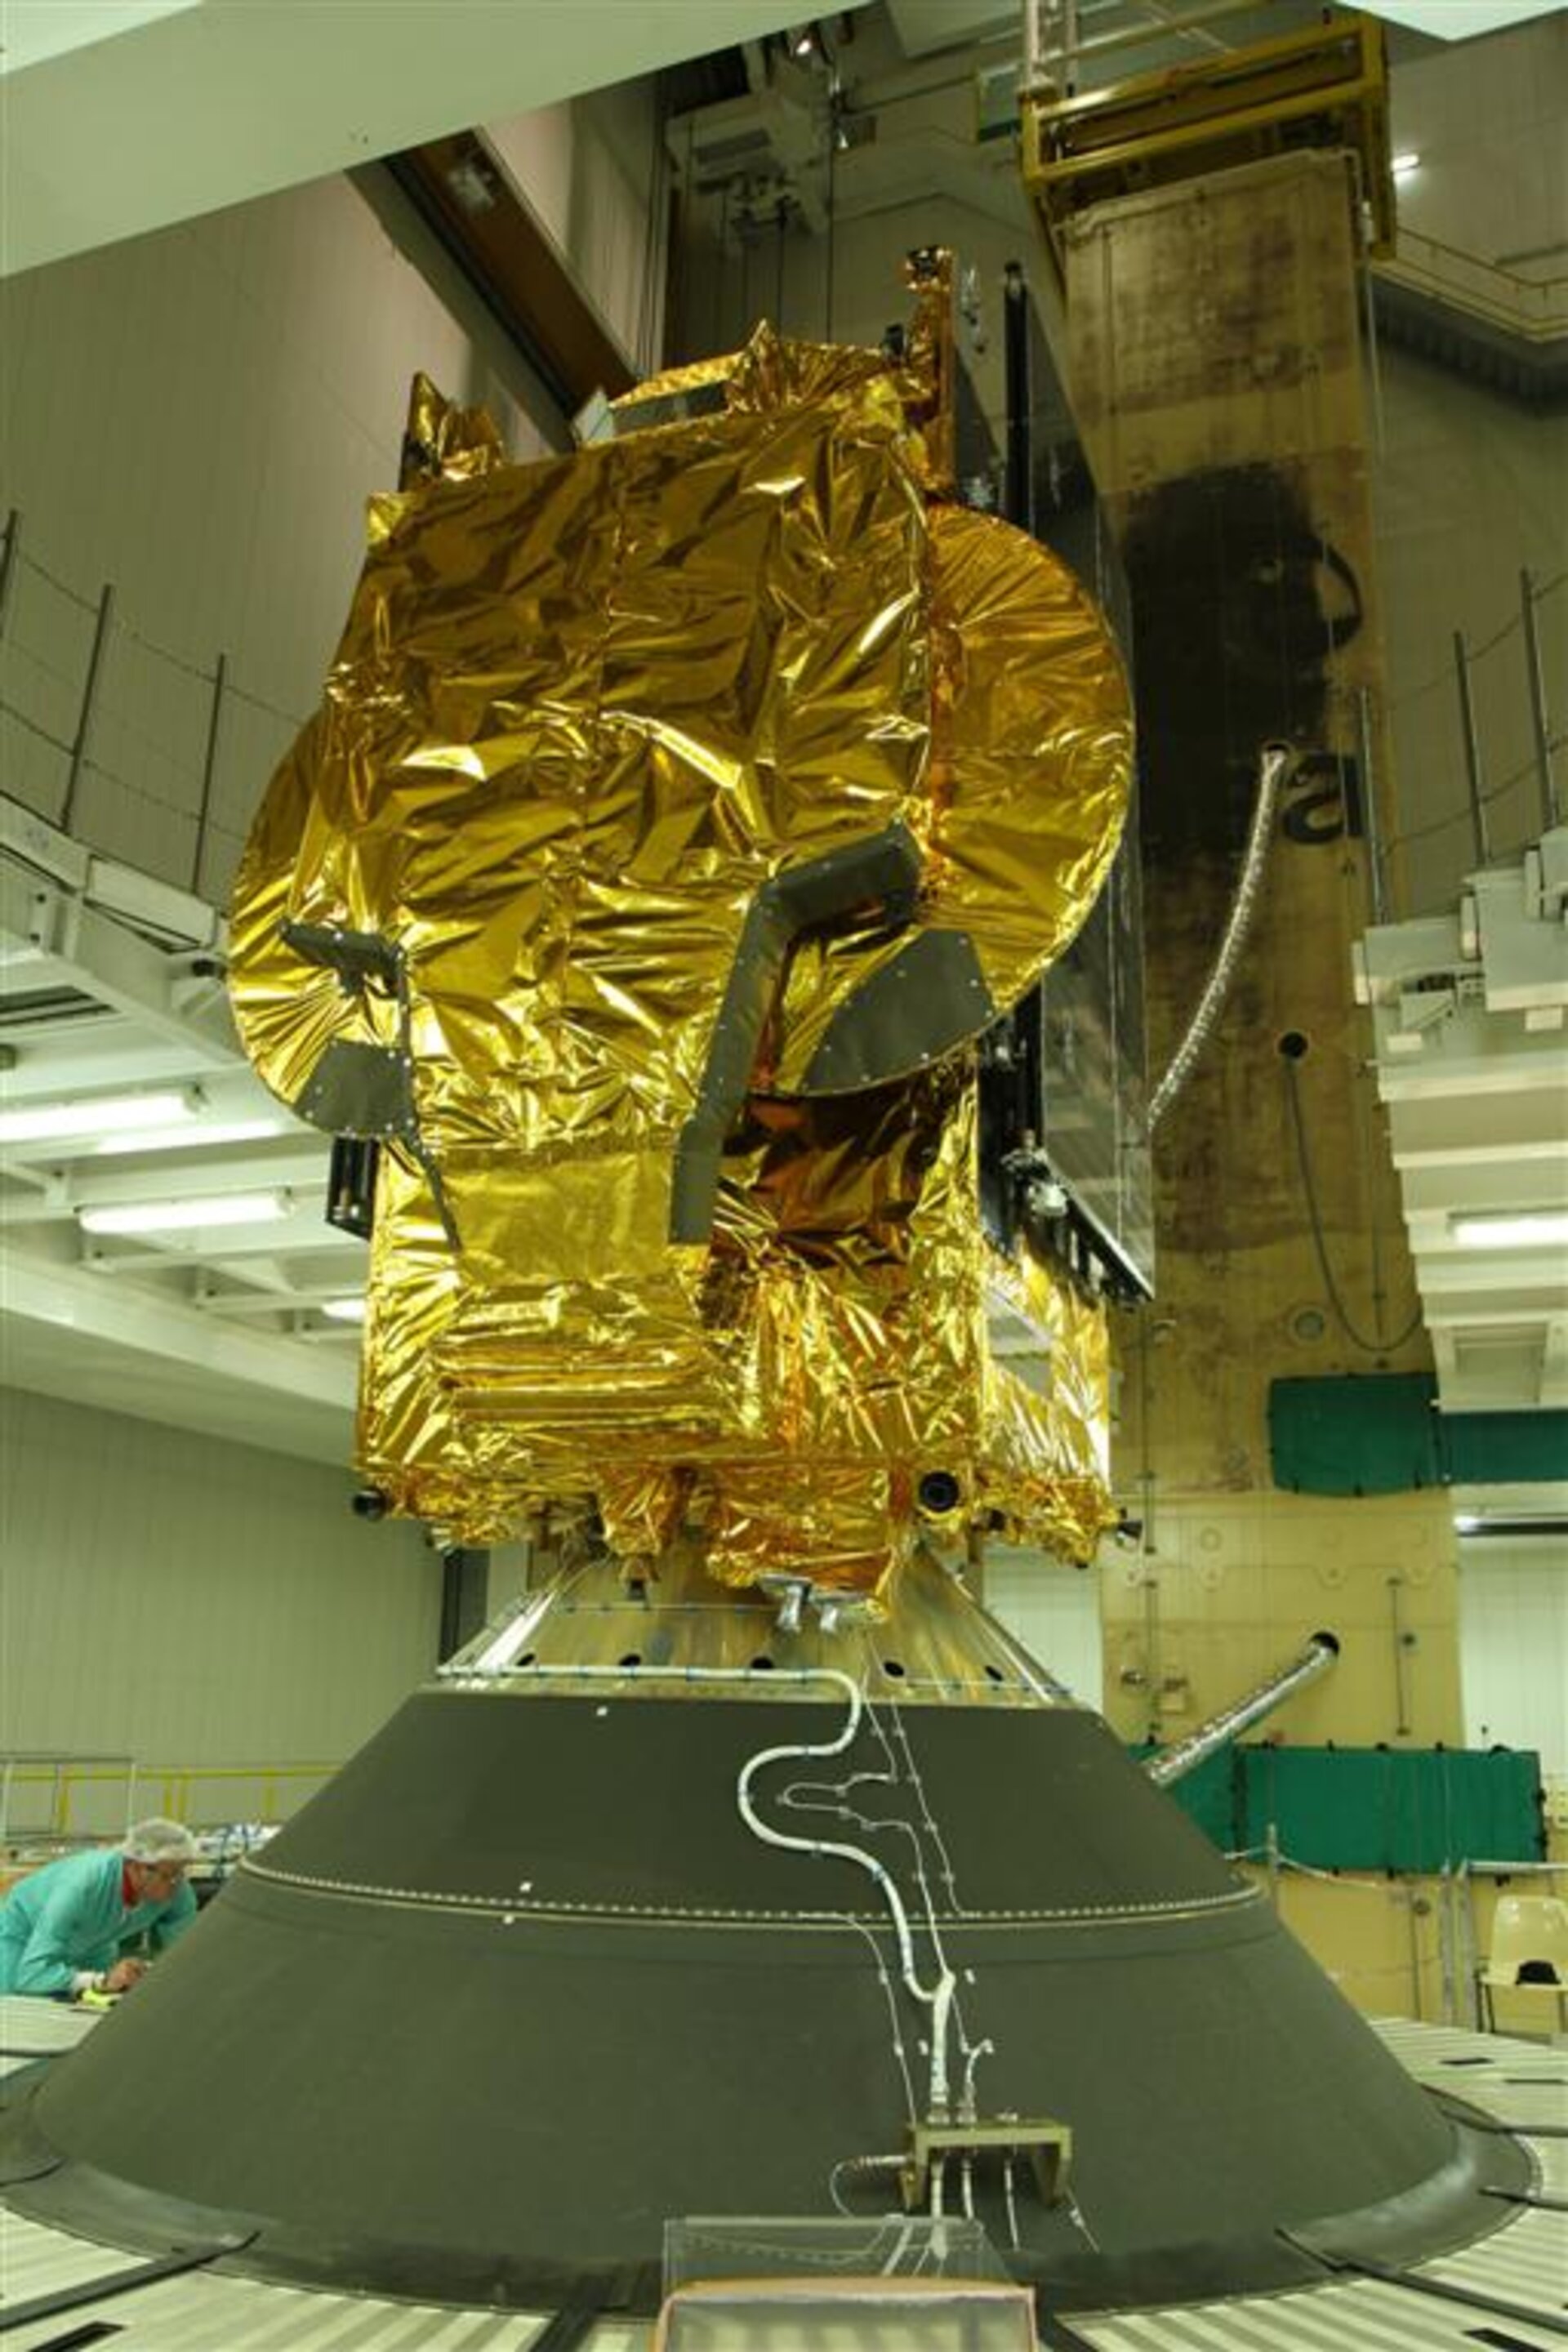 Hylas-1 atop Ariane 5